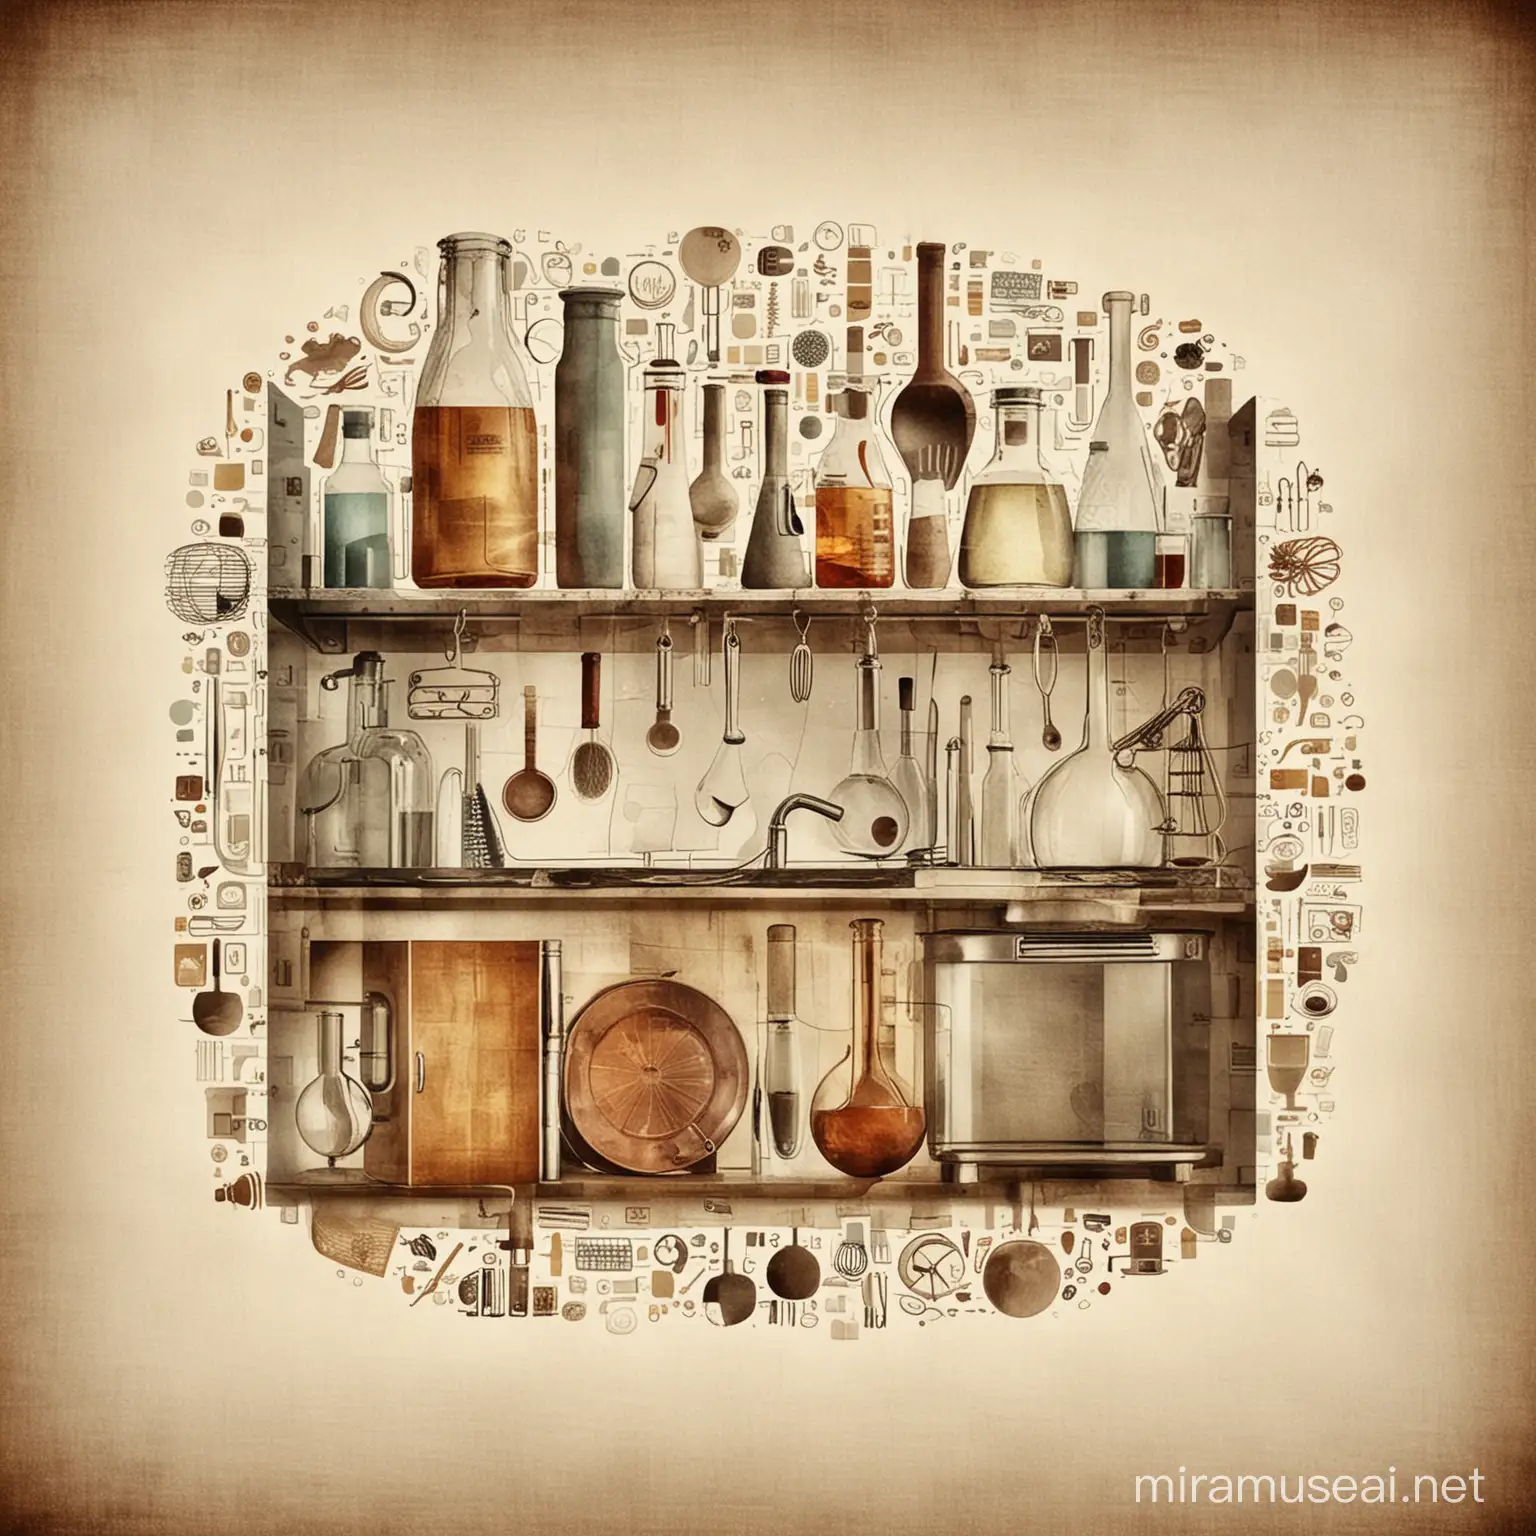 imagen abstracta con tematica de cocina y laboratorio